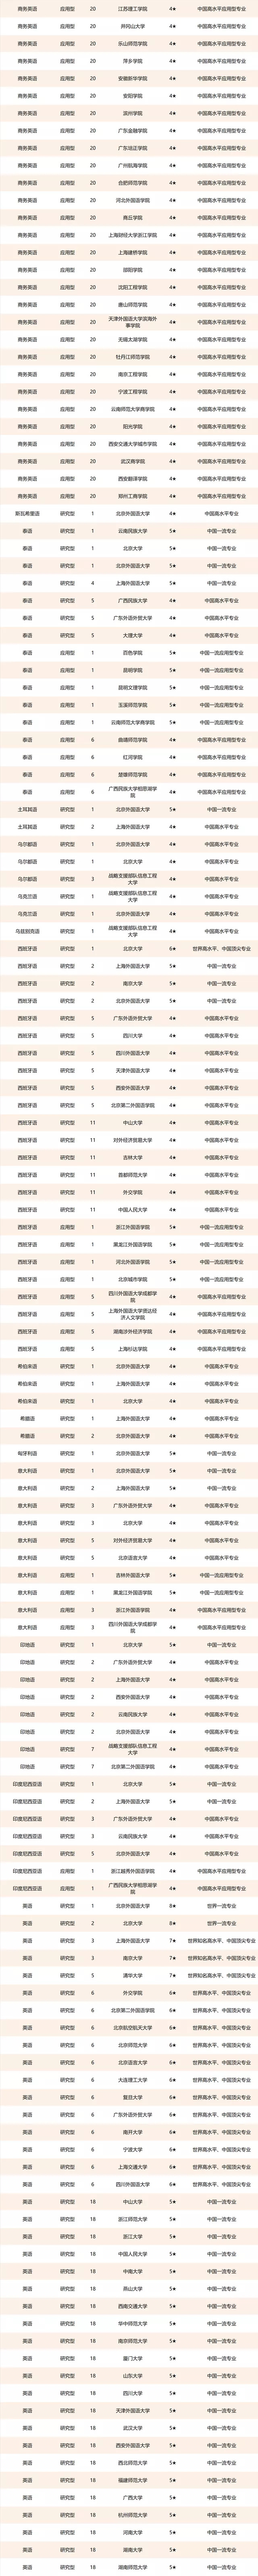 外国语大学排名2021最新排名2021中国外国语大学排行榜